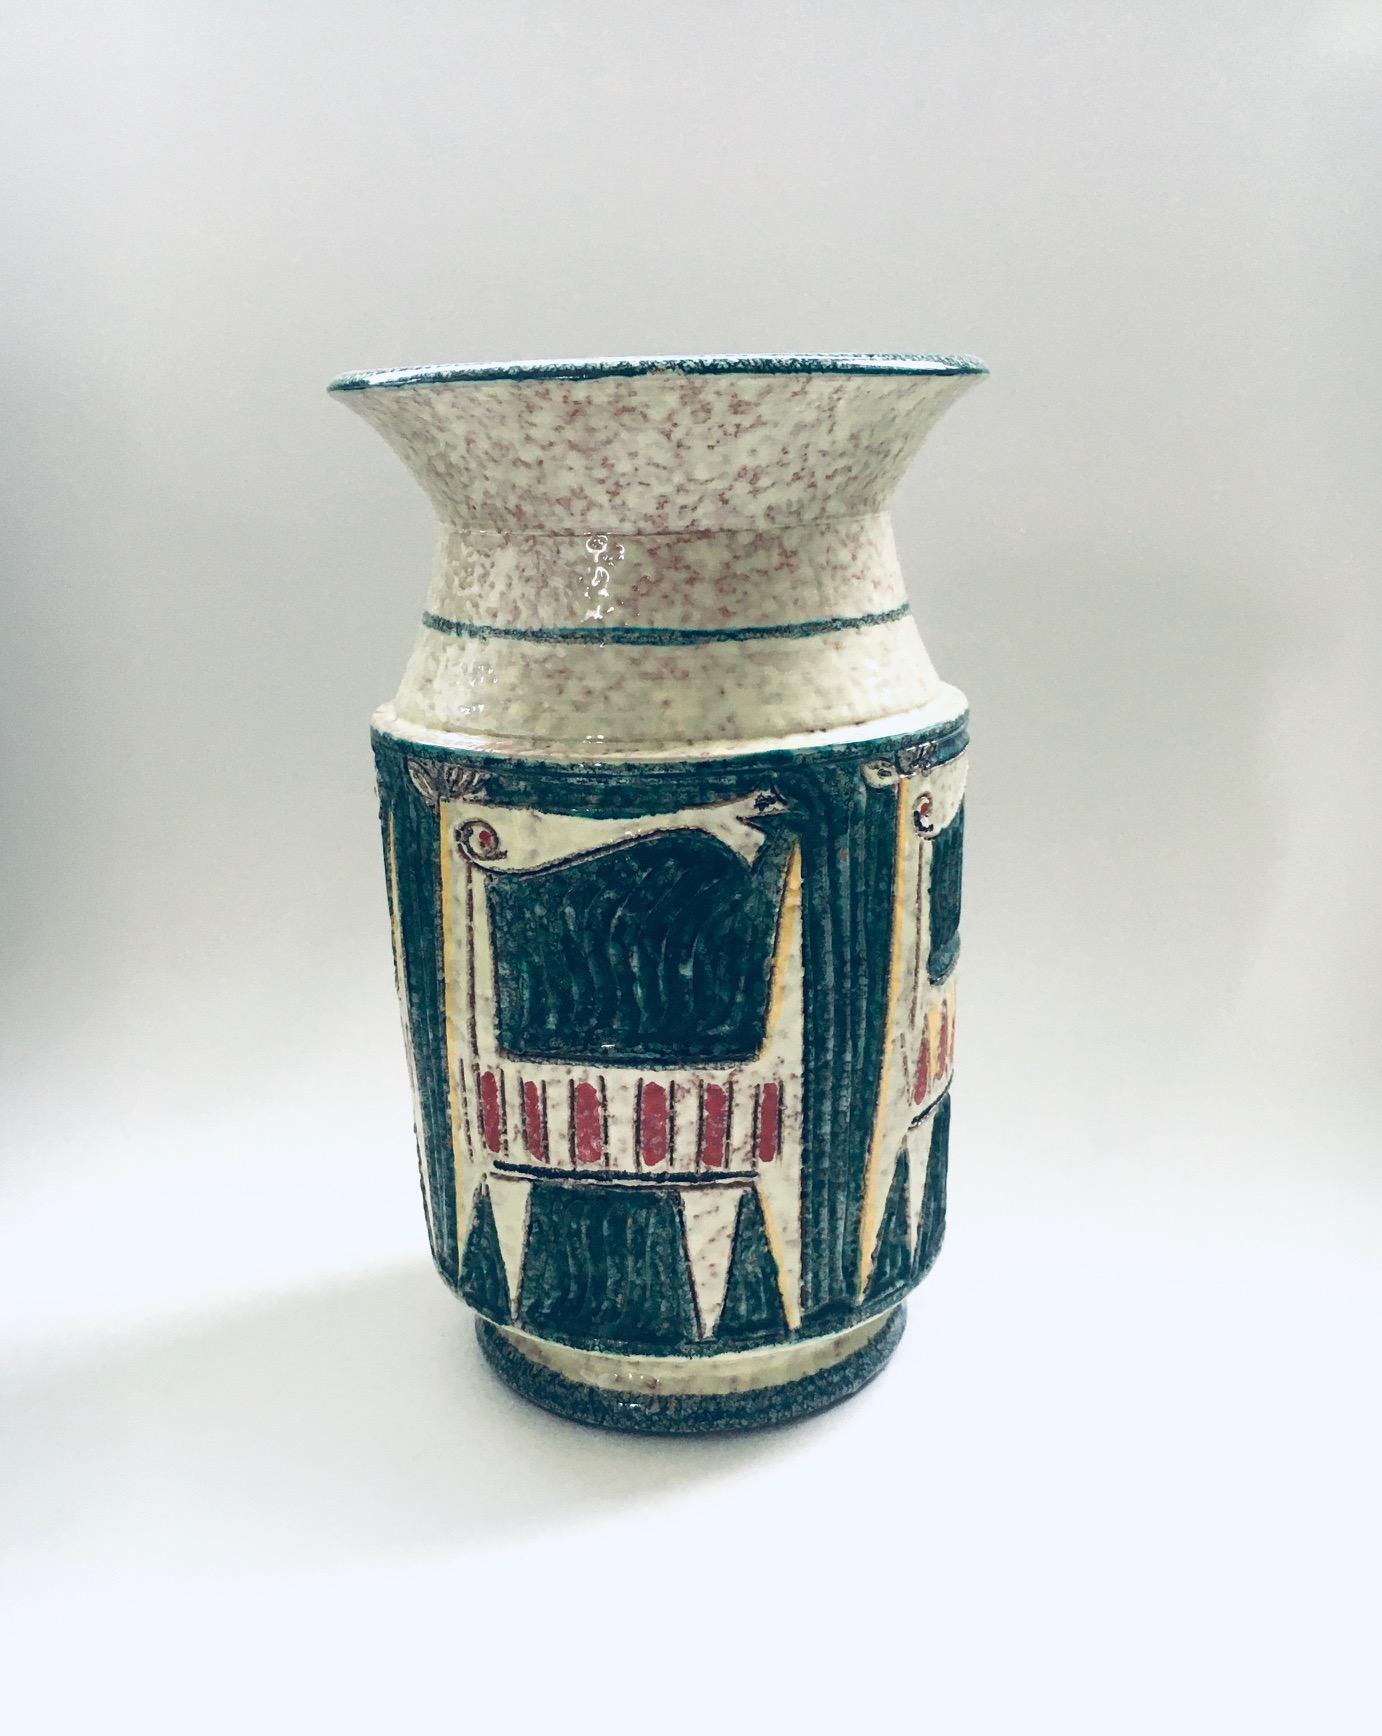 Vintage Midcentury Art Ceramics Studio Stoneware Etruscan Horses Vase model 63/65 by Fratelli Fanciullacci, made in Italy 1960's. Signé Italie 63/65 sur le fond. Vase grand modèle avec de beaux chevaux abstraits illustrés. Ce vase est en très bon